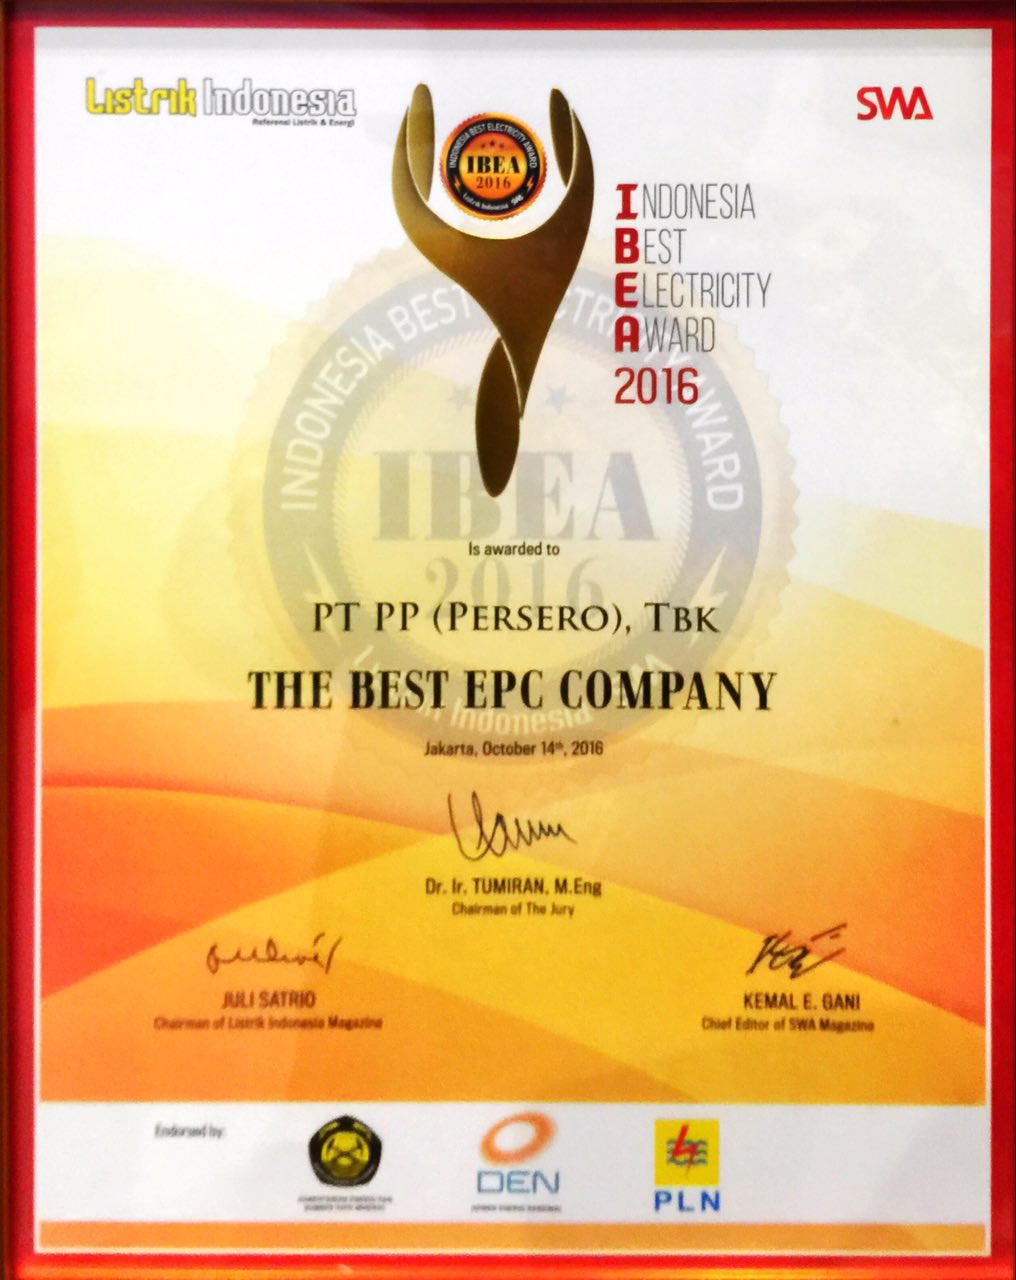 BEST EPC COMPANY - IBEA 2016